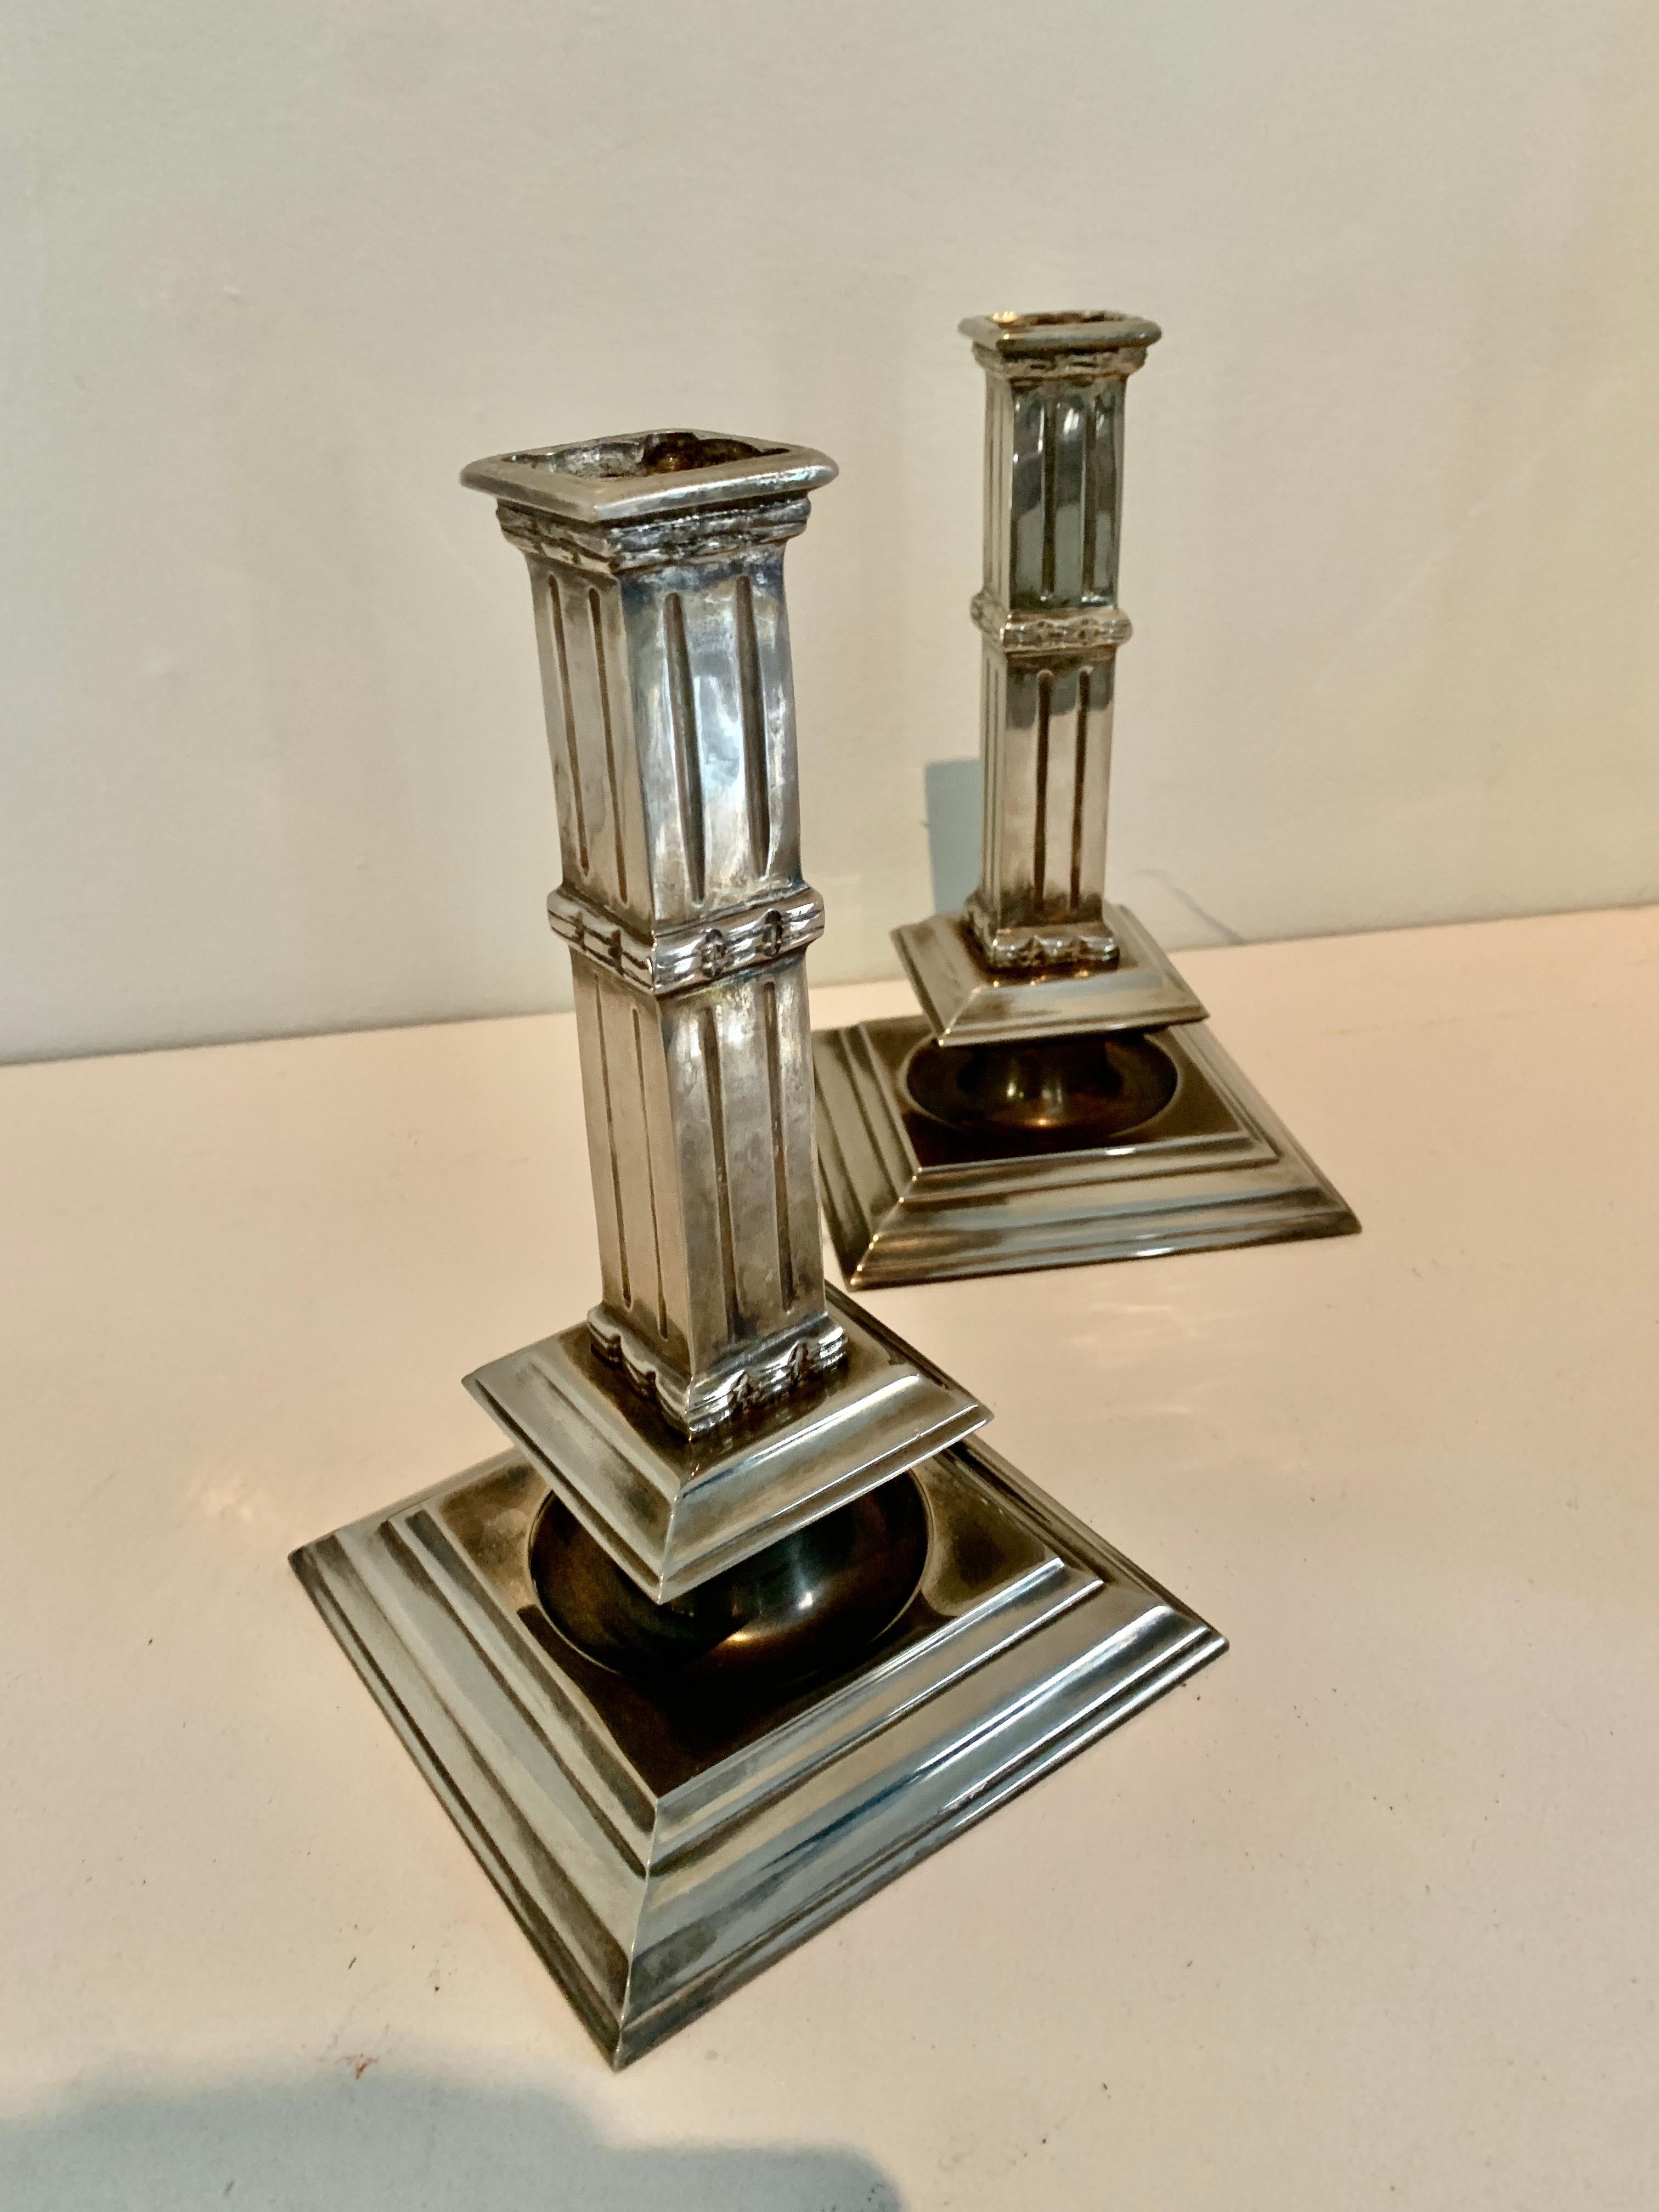 Ein wunderbar architektonisches Paar Kerzenhalter aus Silberblech - das Paar erinnert an Säulen und passt zu jedem Esstisch, Kaminsims oder jeder Konsole. Die Oberfläche ist ein poliertes Silber mit großer Tiefe. Exquisit, einfach und